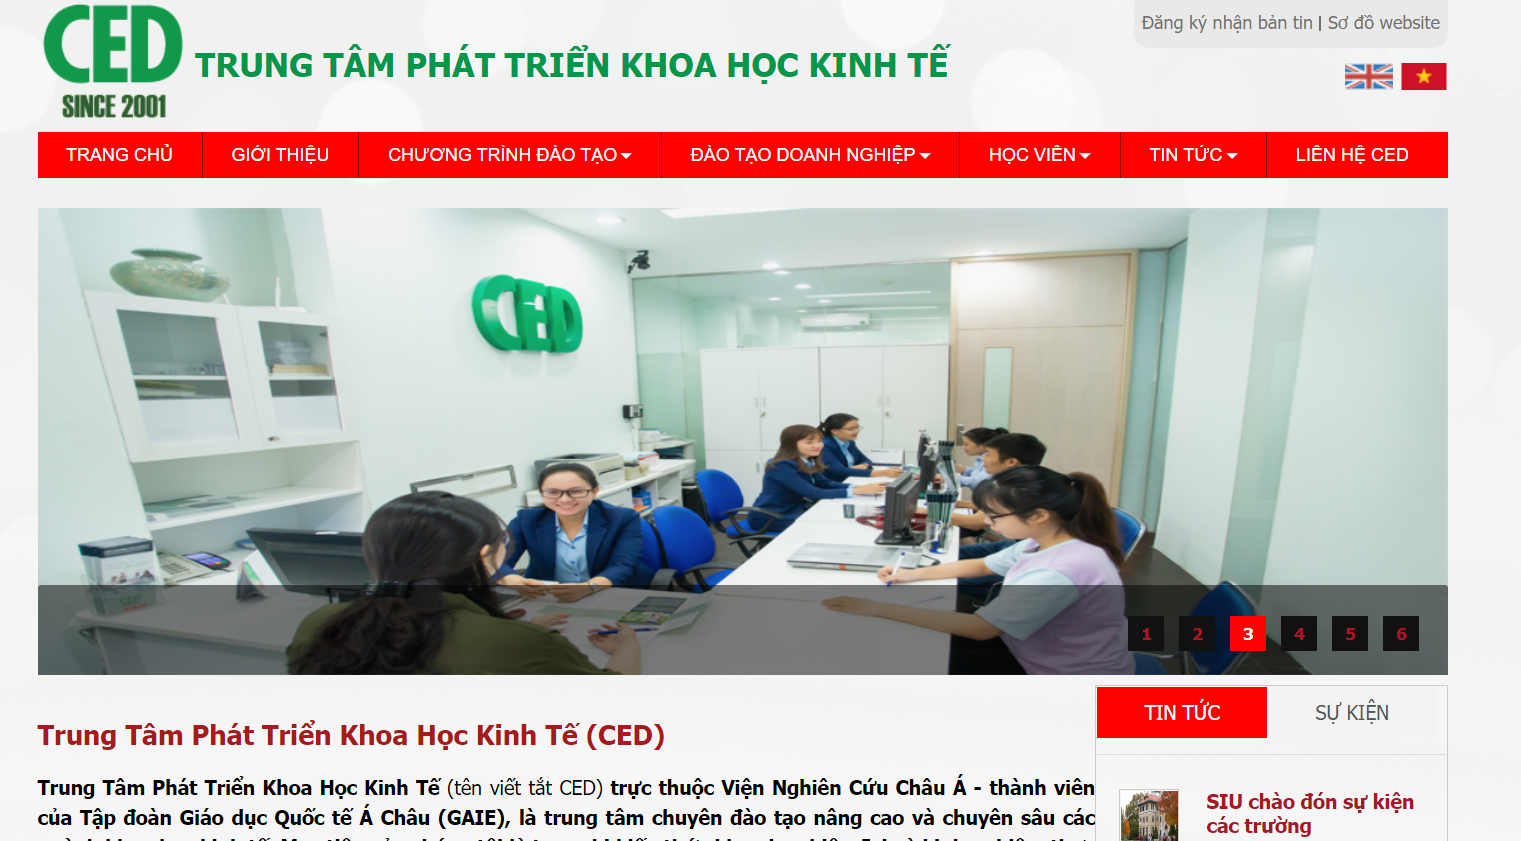 Website chính thức của trung tâm CED